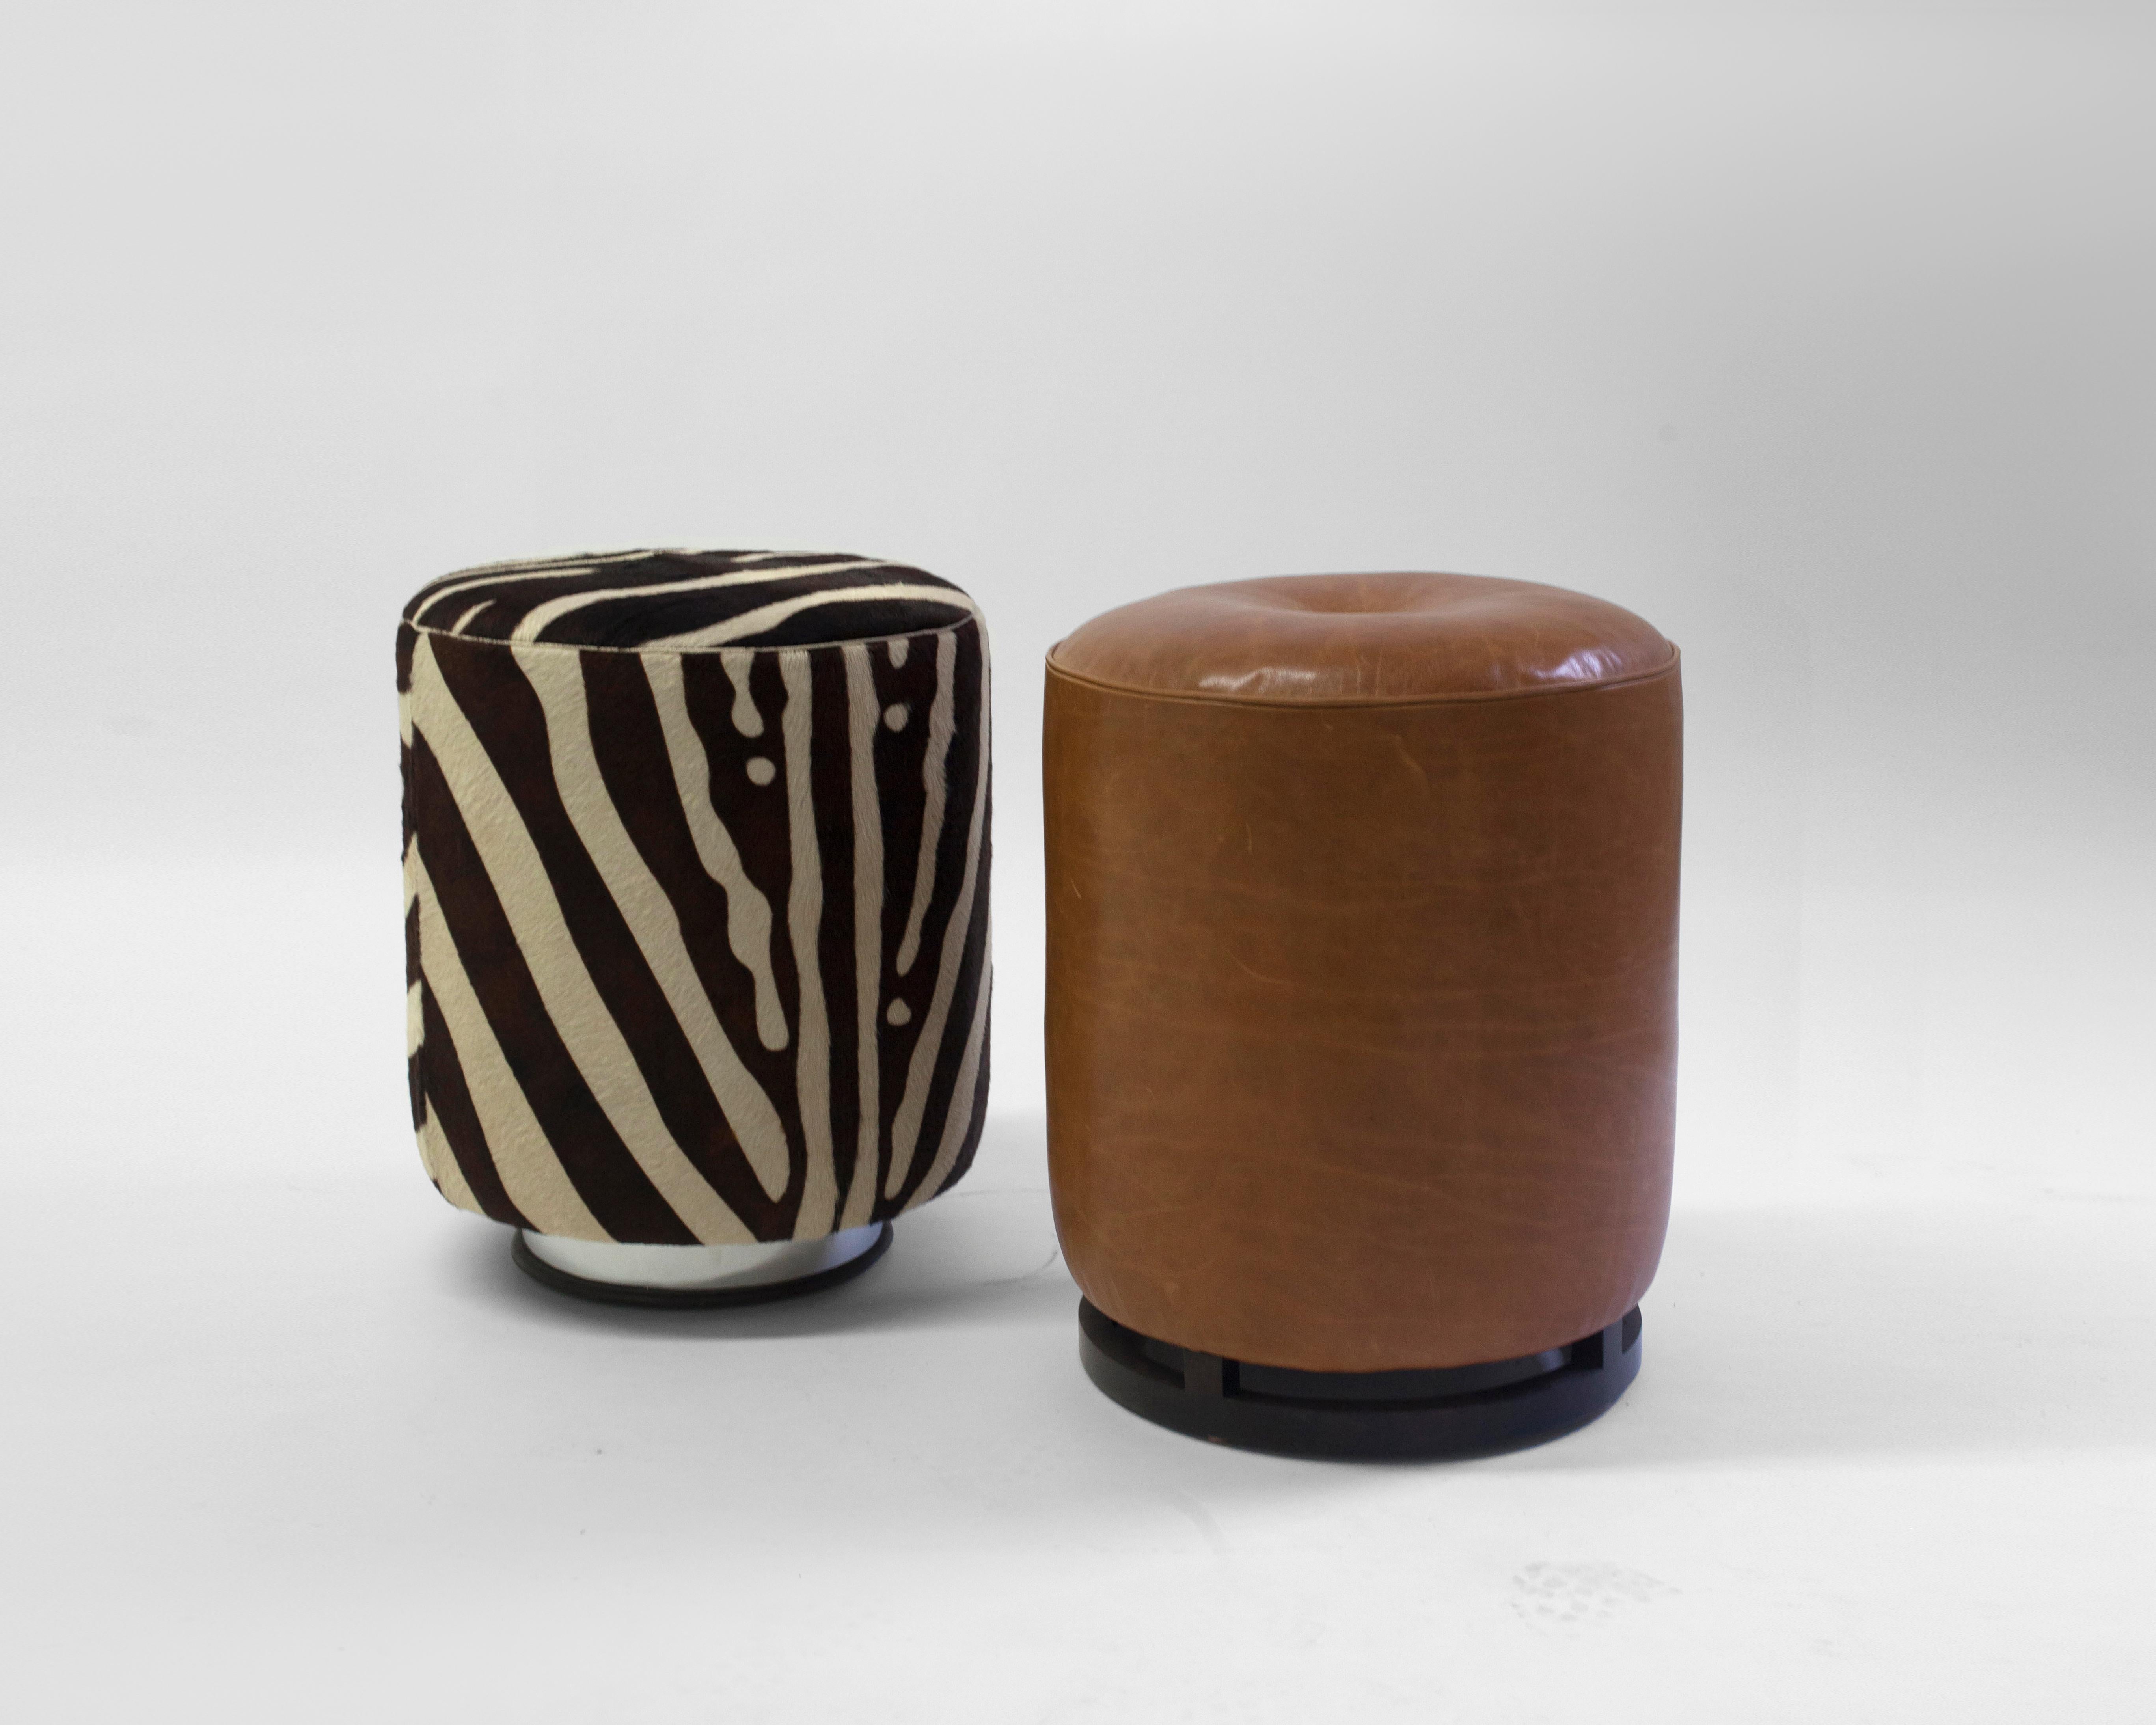 Le pouf Colle est l'un des deux poufs que nous proposons dans notre collection LF - il est présenté en cuir marron et en fausse peau mais peut être recouvert du matériau de votre choix - ce meuble d'appoint polyvalent peut être utilisé comme siège